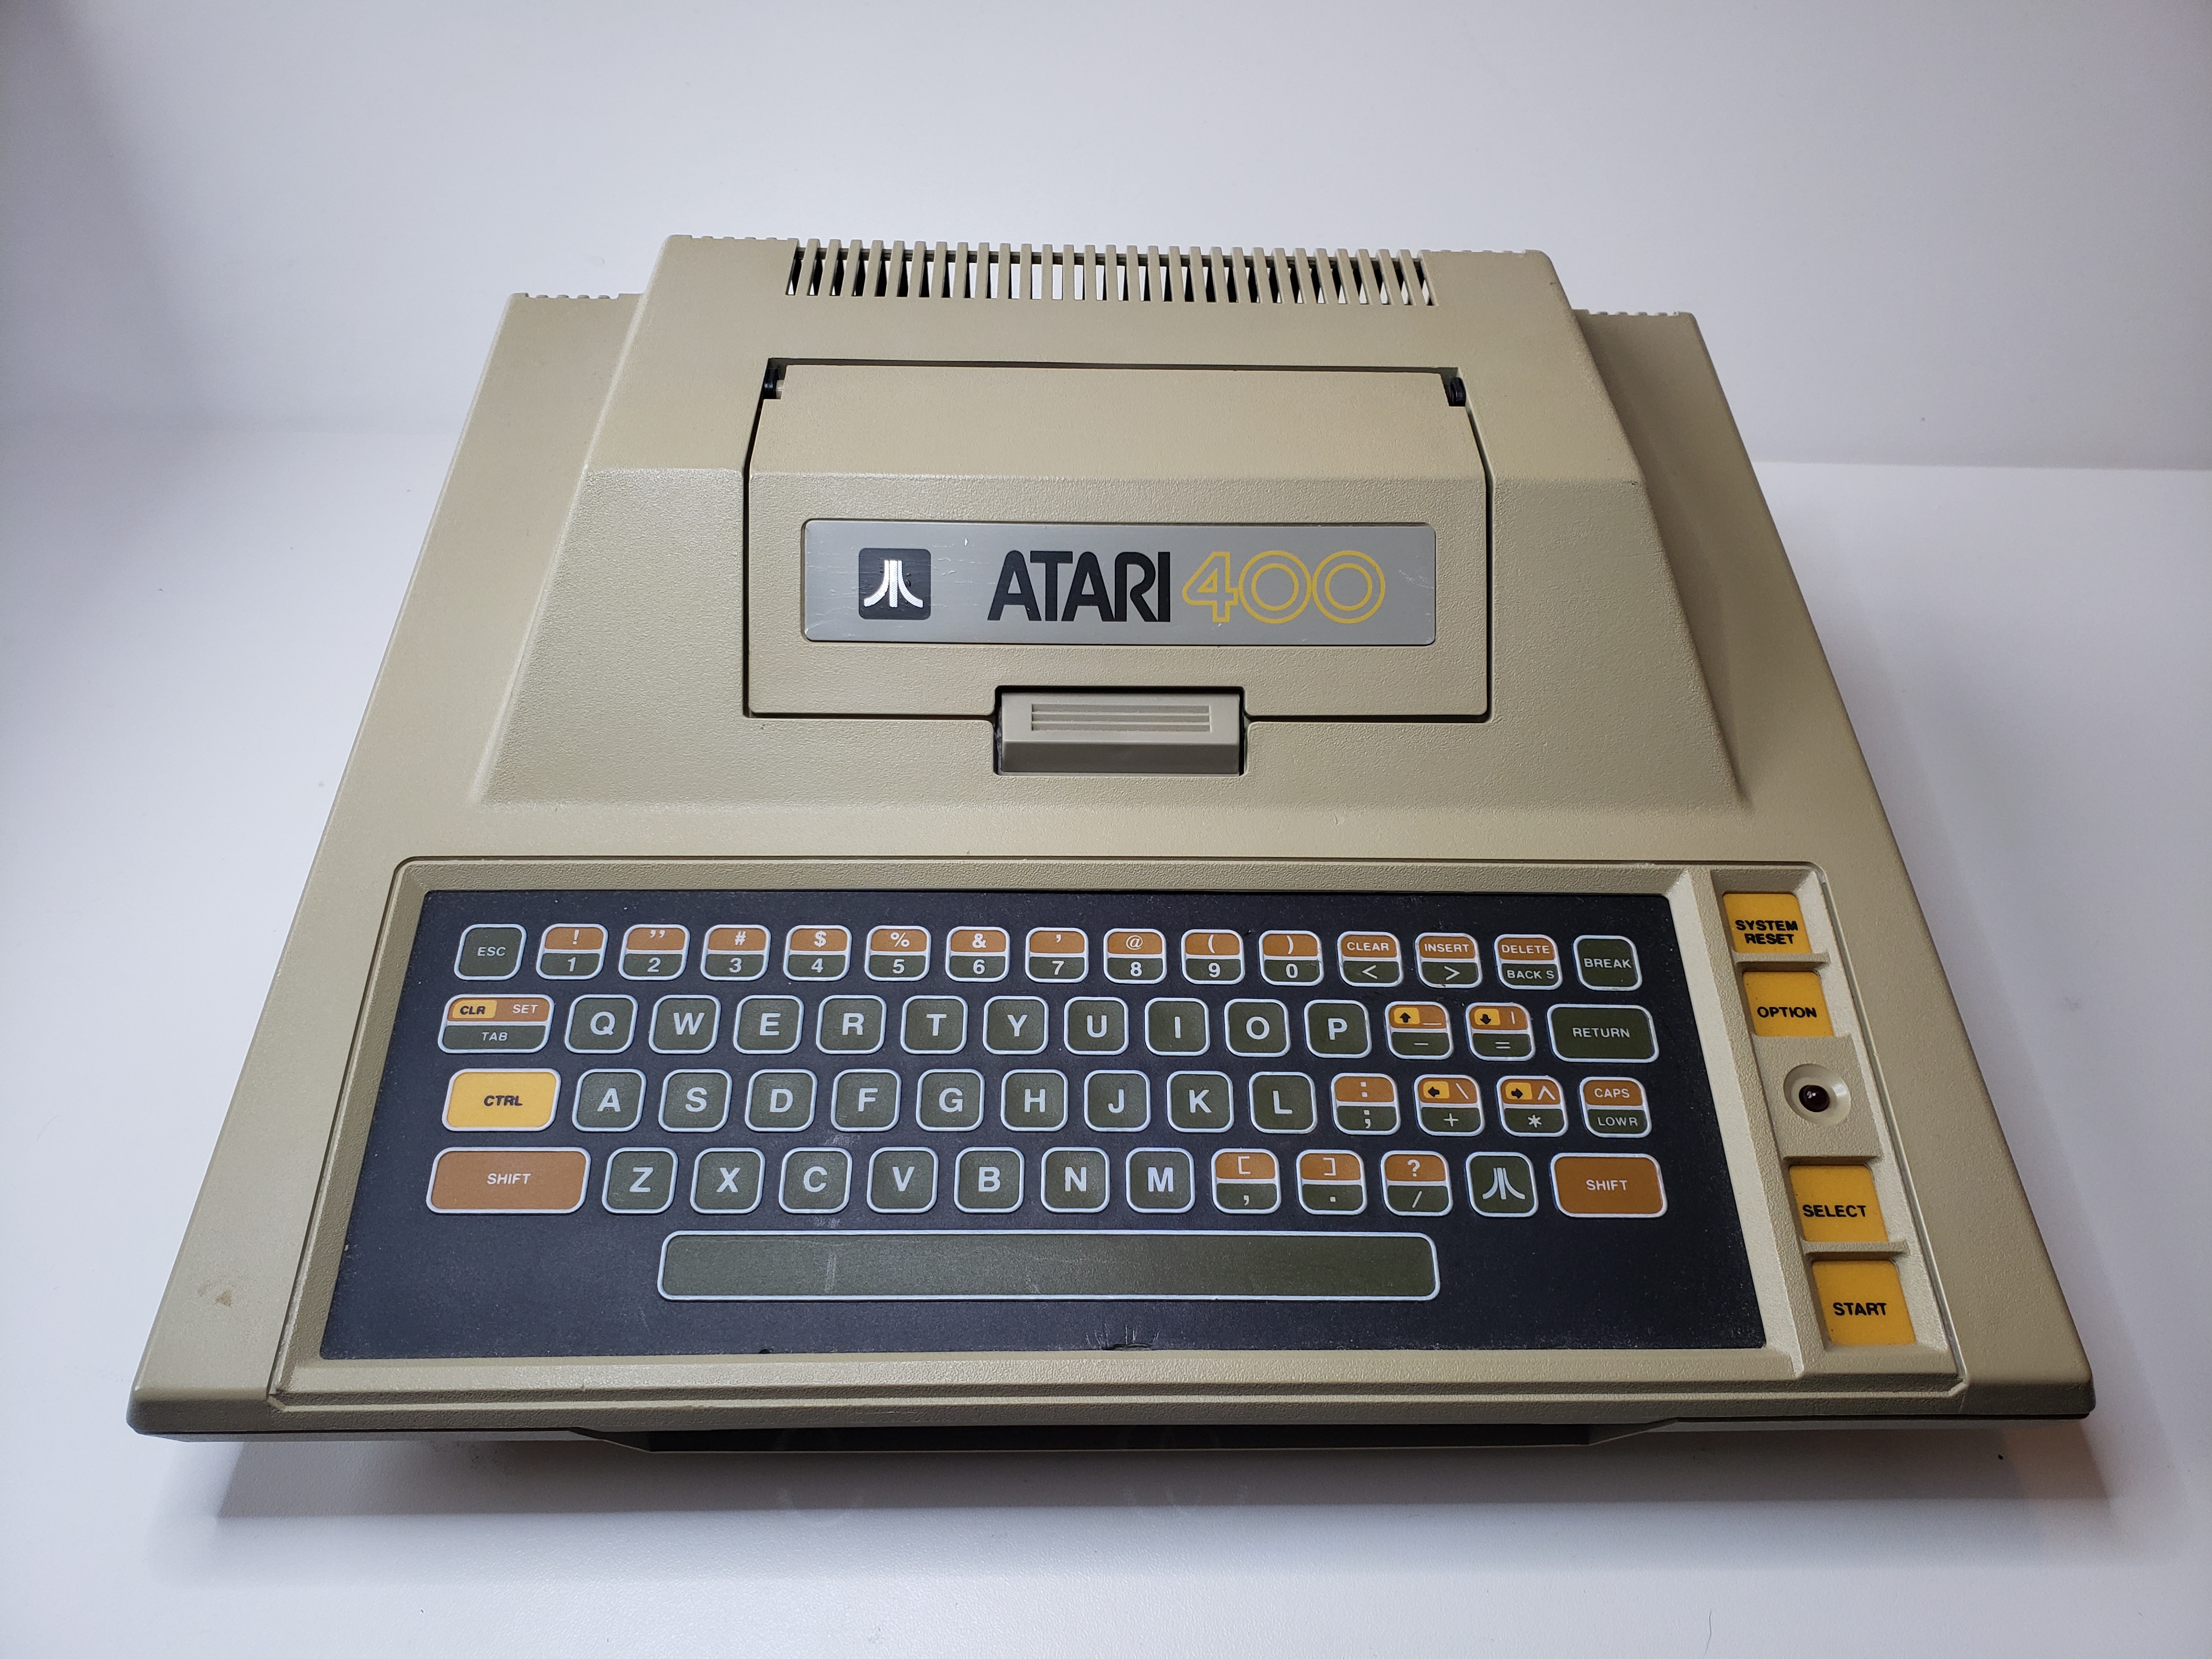 Atari 400: AV 522775 - Computadora